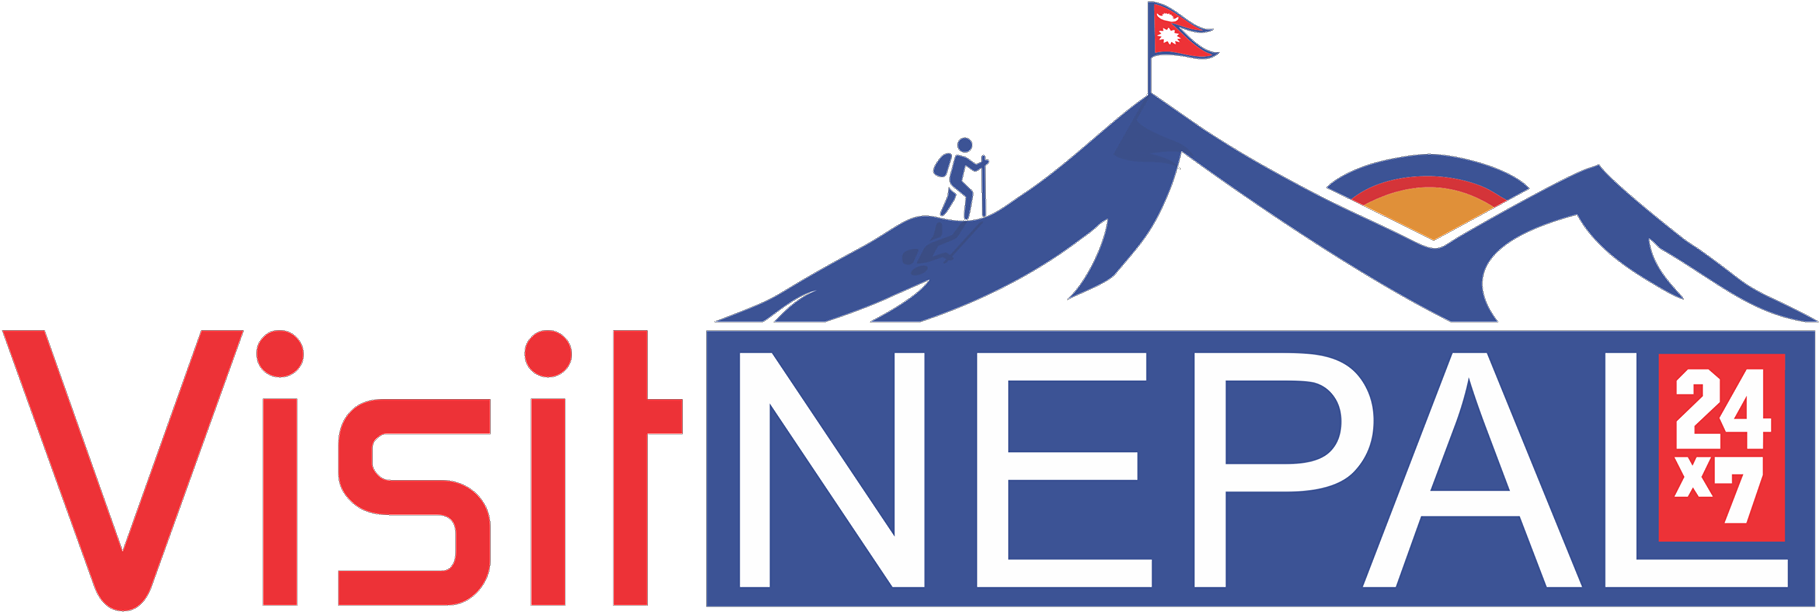 Visit Nepal_ Tourism Logo PNG